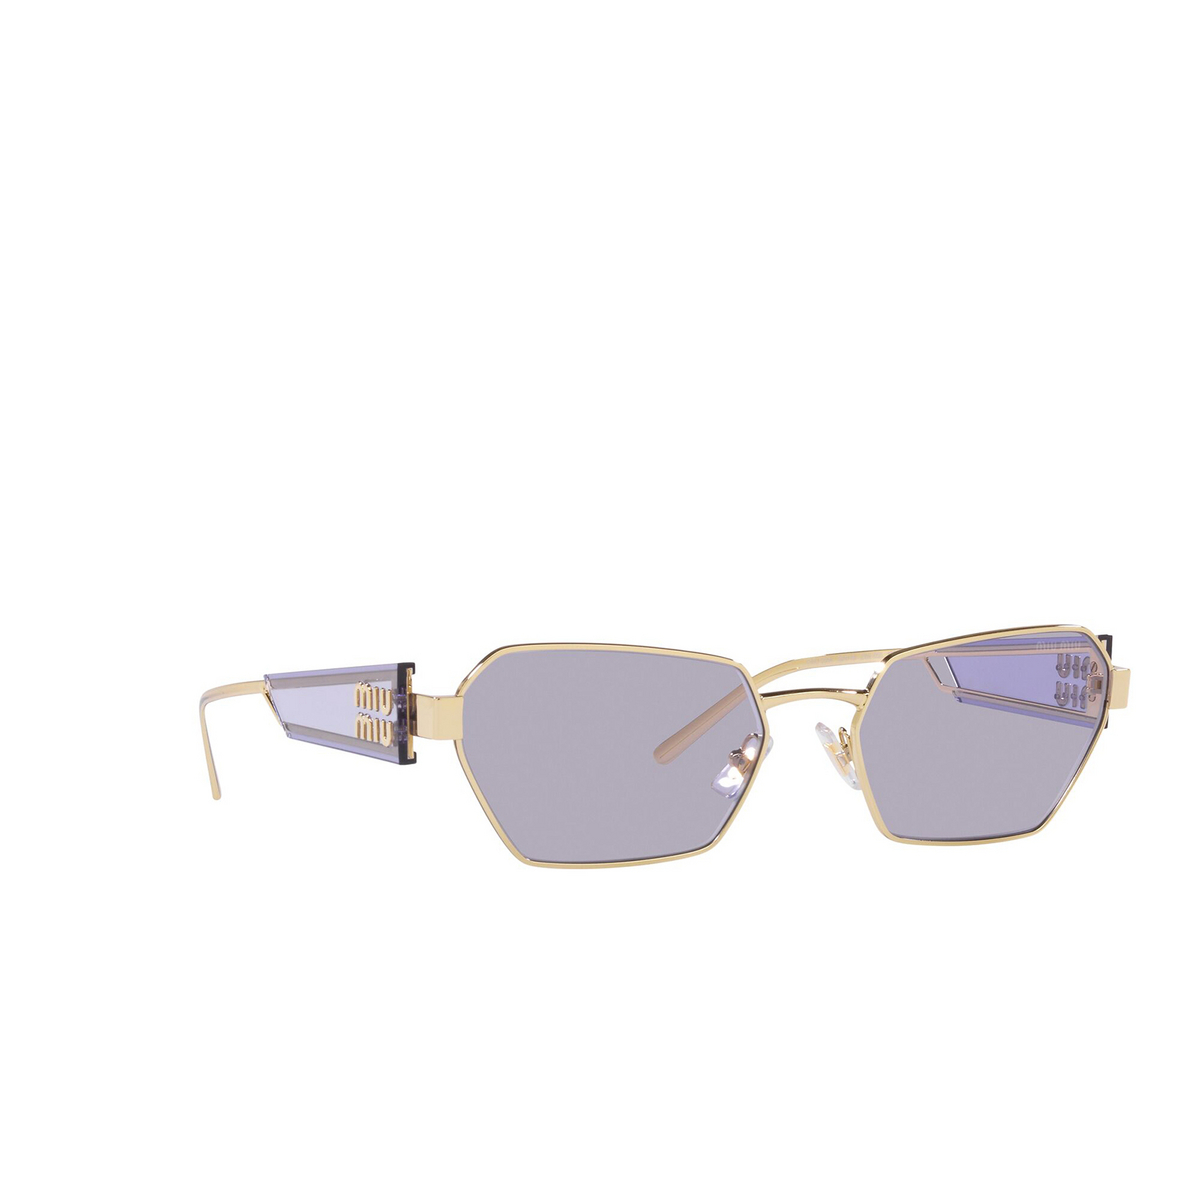 Miu Miu® Irregular Sunglasses: MU 53WS color Pale Gold ZVN05S - 2/3.